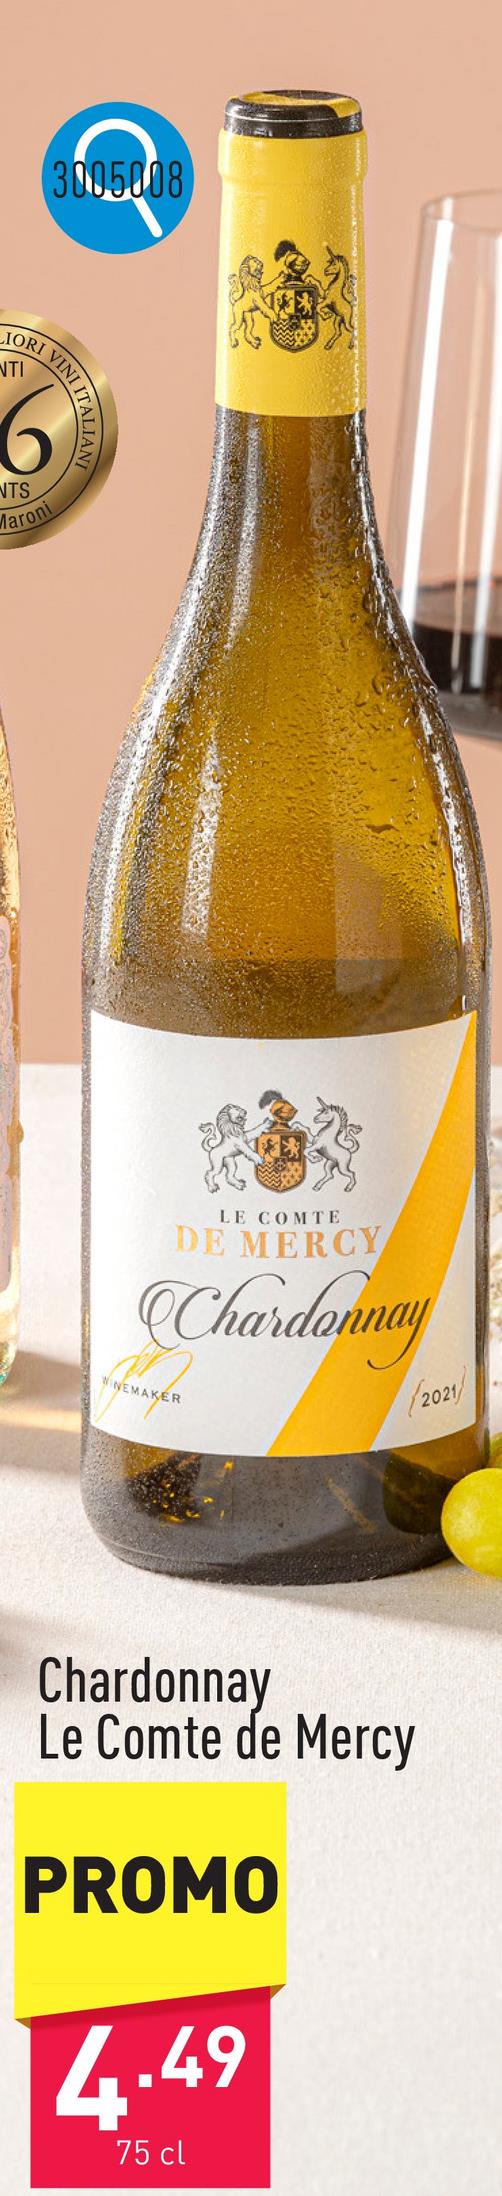 Chardonnay Le Comte de Mercy vin blanc hongrois souple et charmant au bouquet délicat de fruits jaunes à noyau et à la subtile note boisée, arômes typiques de pêche et belle acidité en bouchecépage : chardonnaysuggestion : pour accompagner plats à base de poisson ou viandes blanchesmillésime : 2022